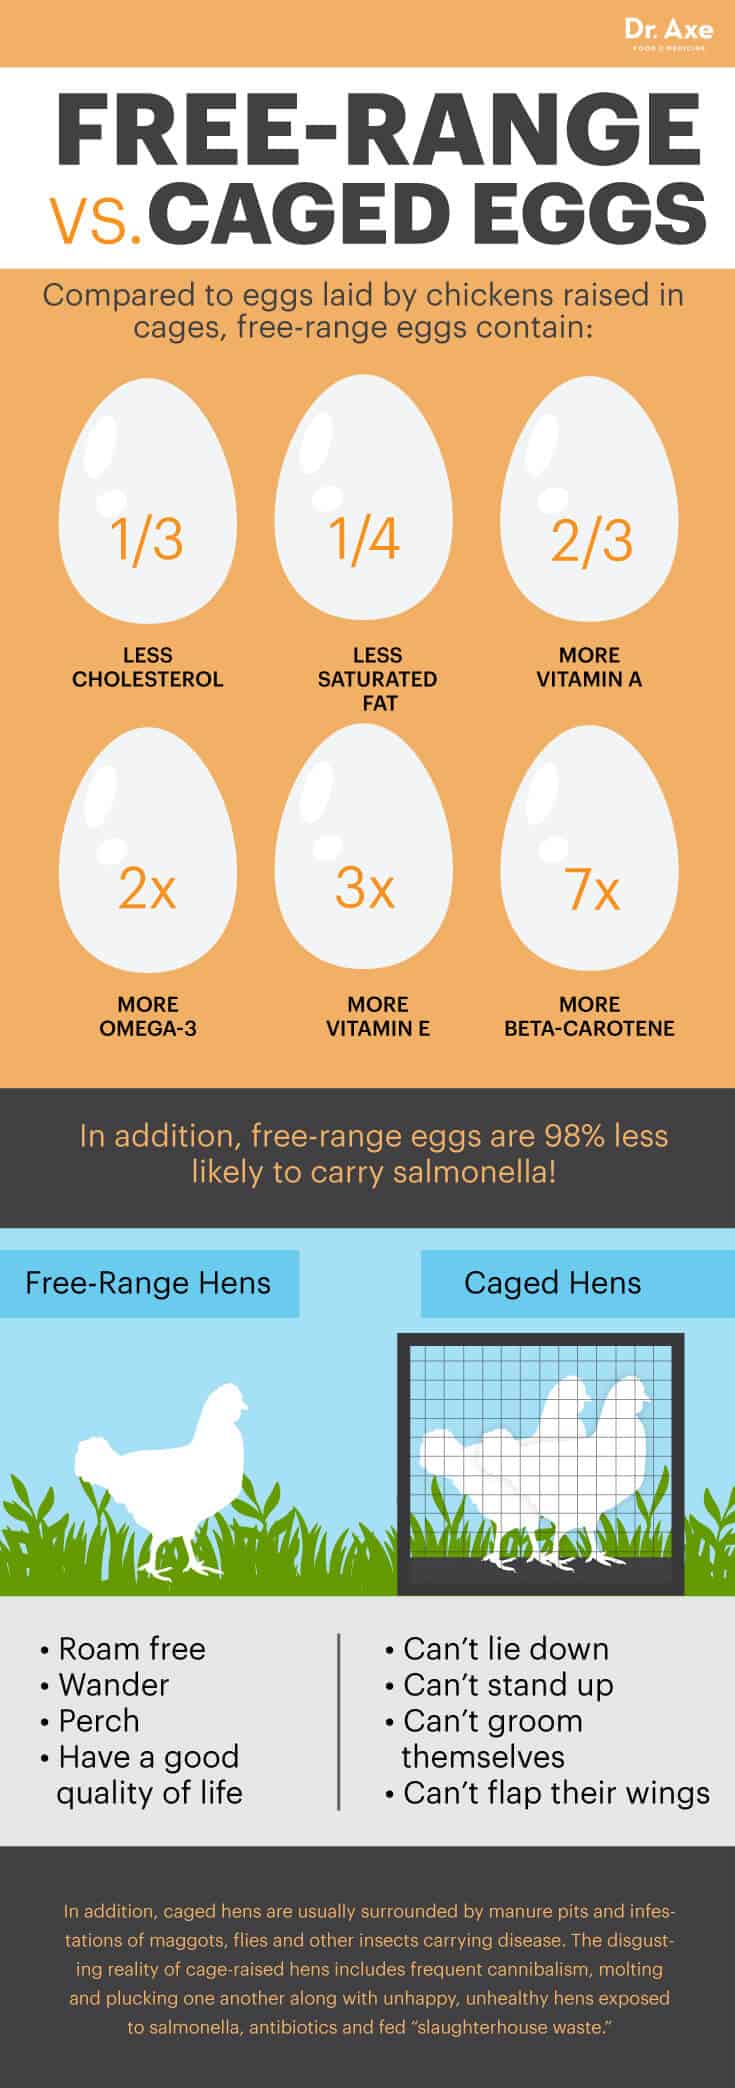 Free-range eggs vs. caged eggs - Dr. Axe